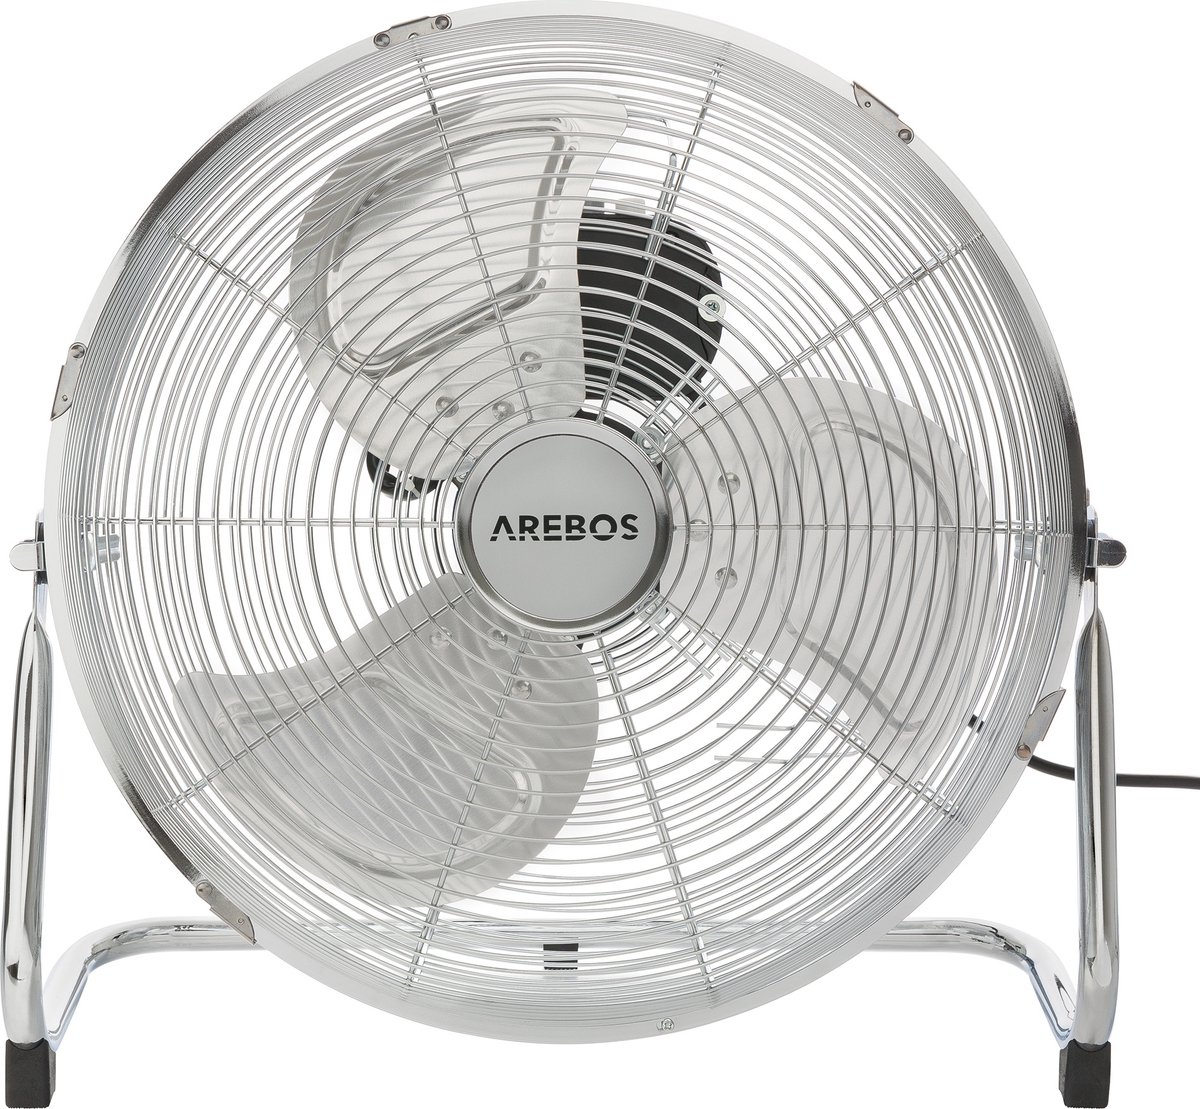 AREBOS Vloerventilator 35cm - Ventilator 70W - 3 Instelbare Snelheidsniveaus - Chroom